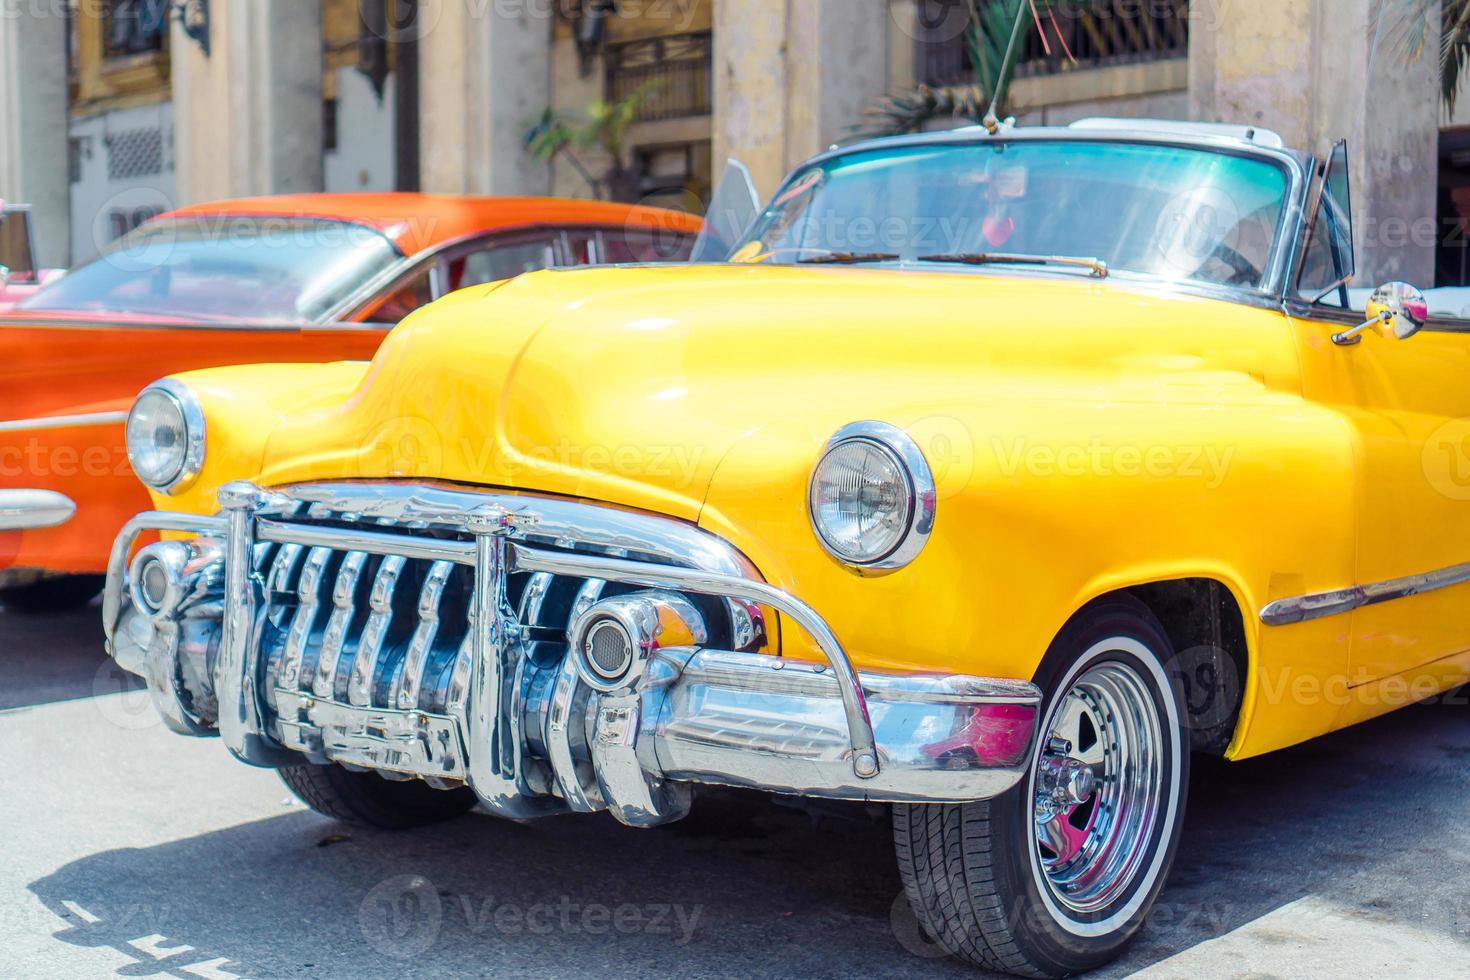 se av gul klassisk årgång bil i gammal Havanna, kuba foto